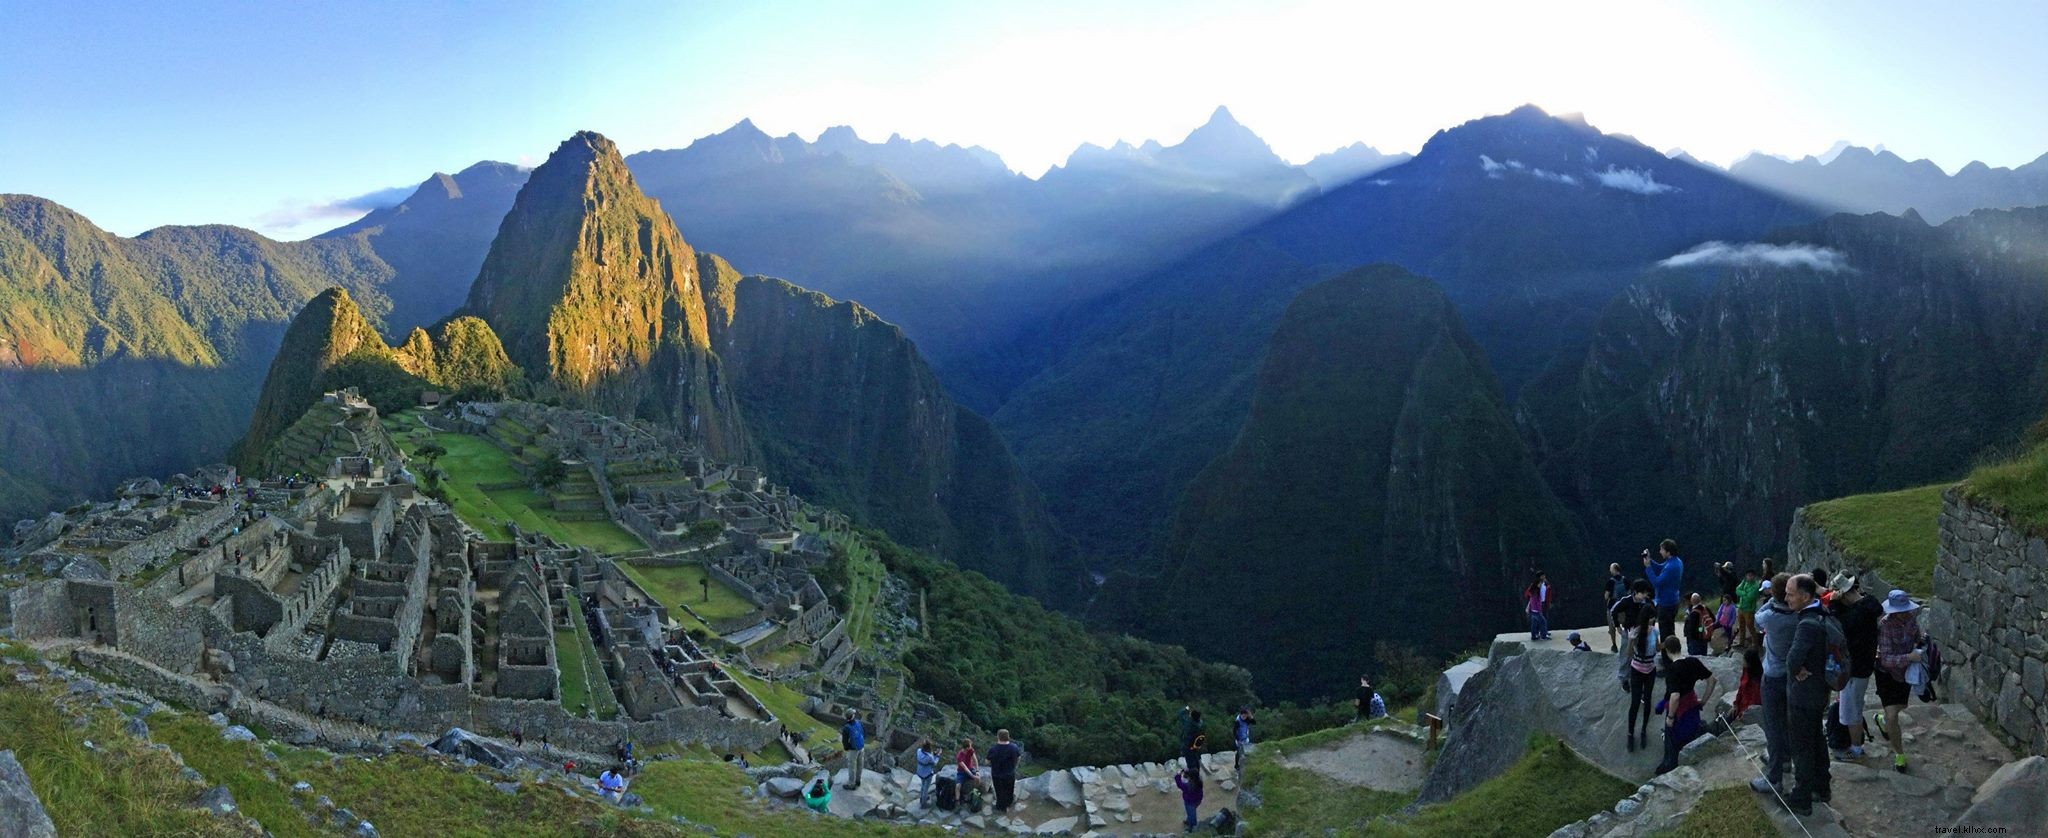 La route la moins fréquentée jusqu au Machu Picchu 